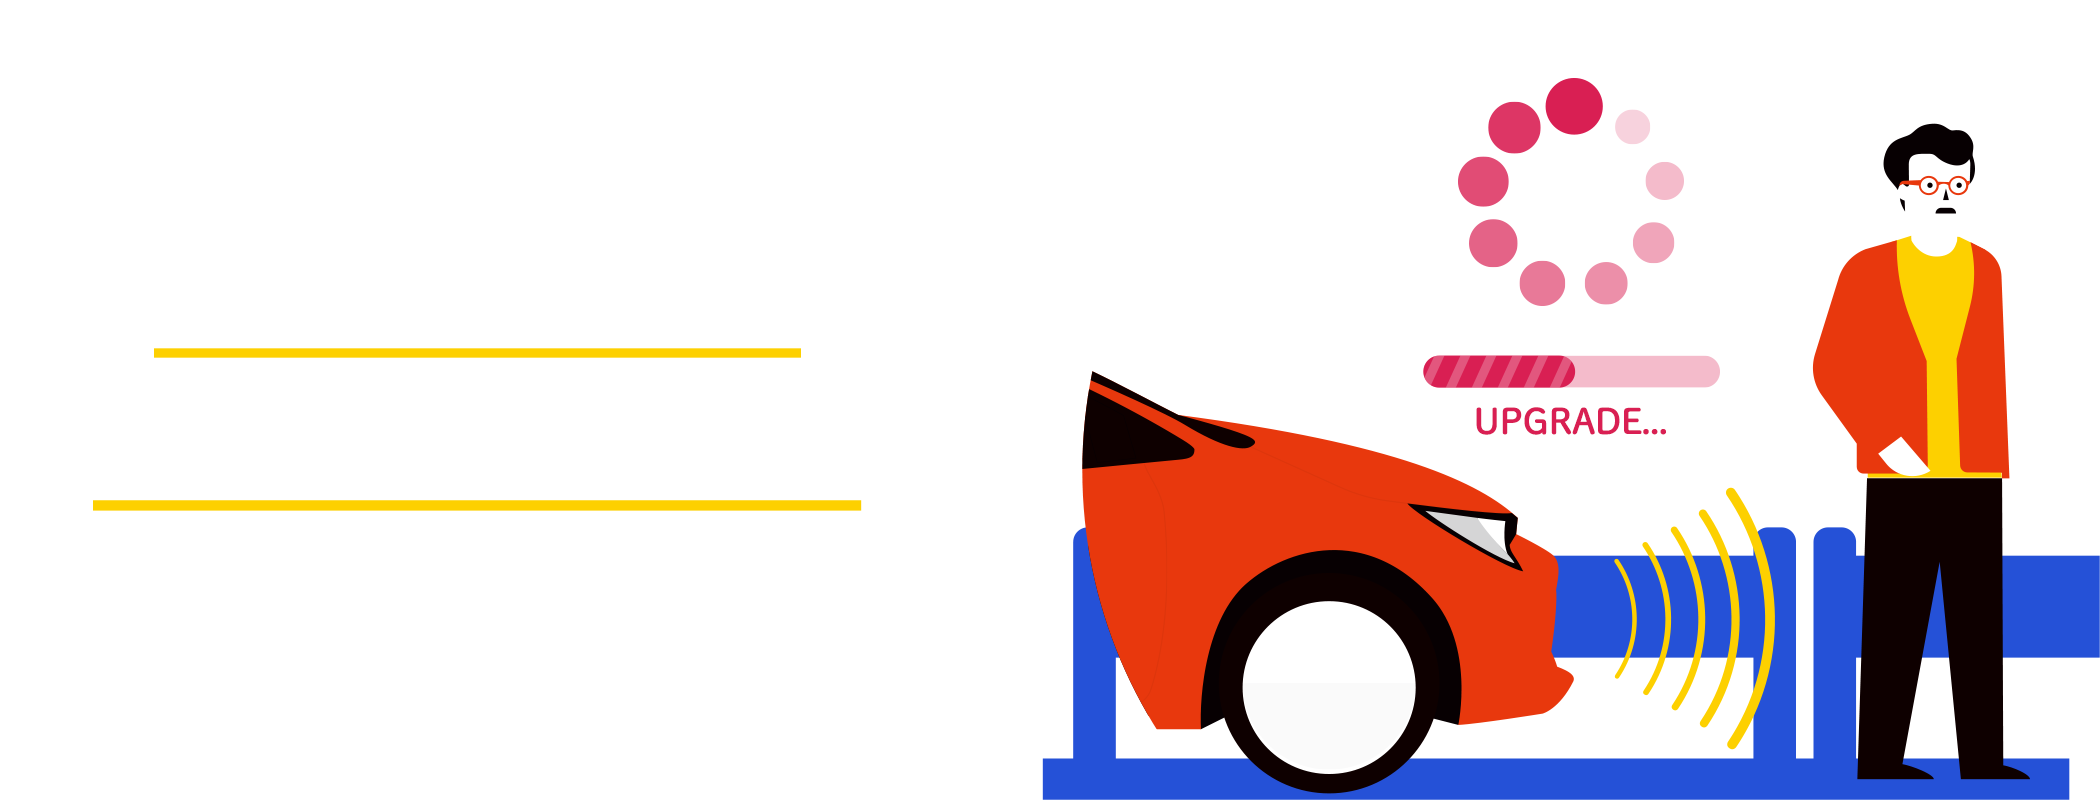 Toyota Safety Sense ソフトウェアアップグレード